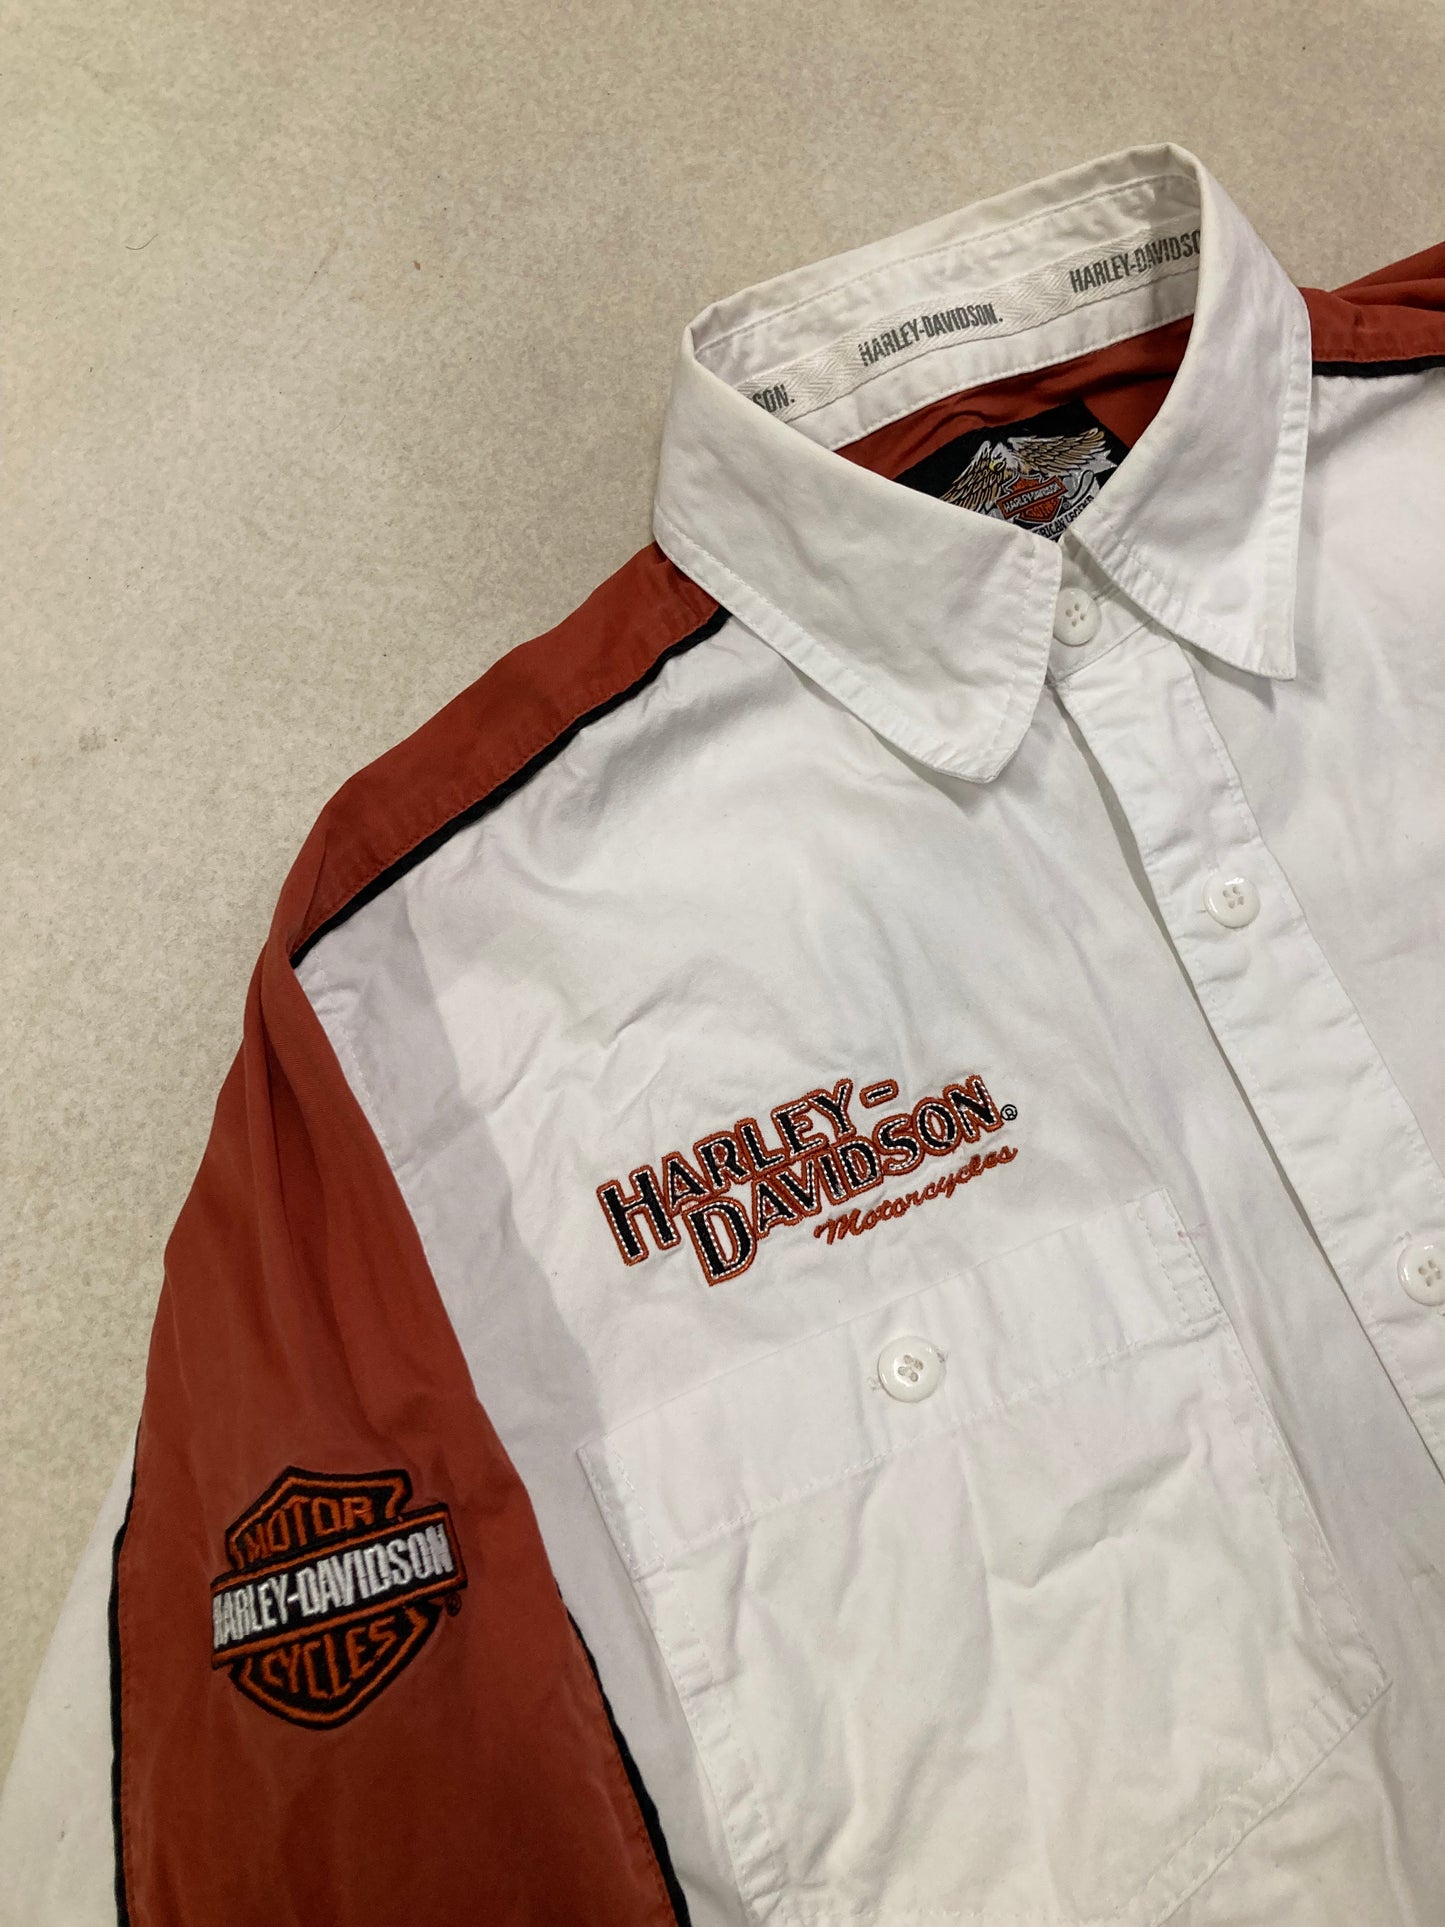 'All Embroidered' Harley Davidson 00s Vintage Shirt - M